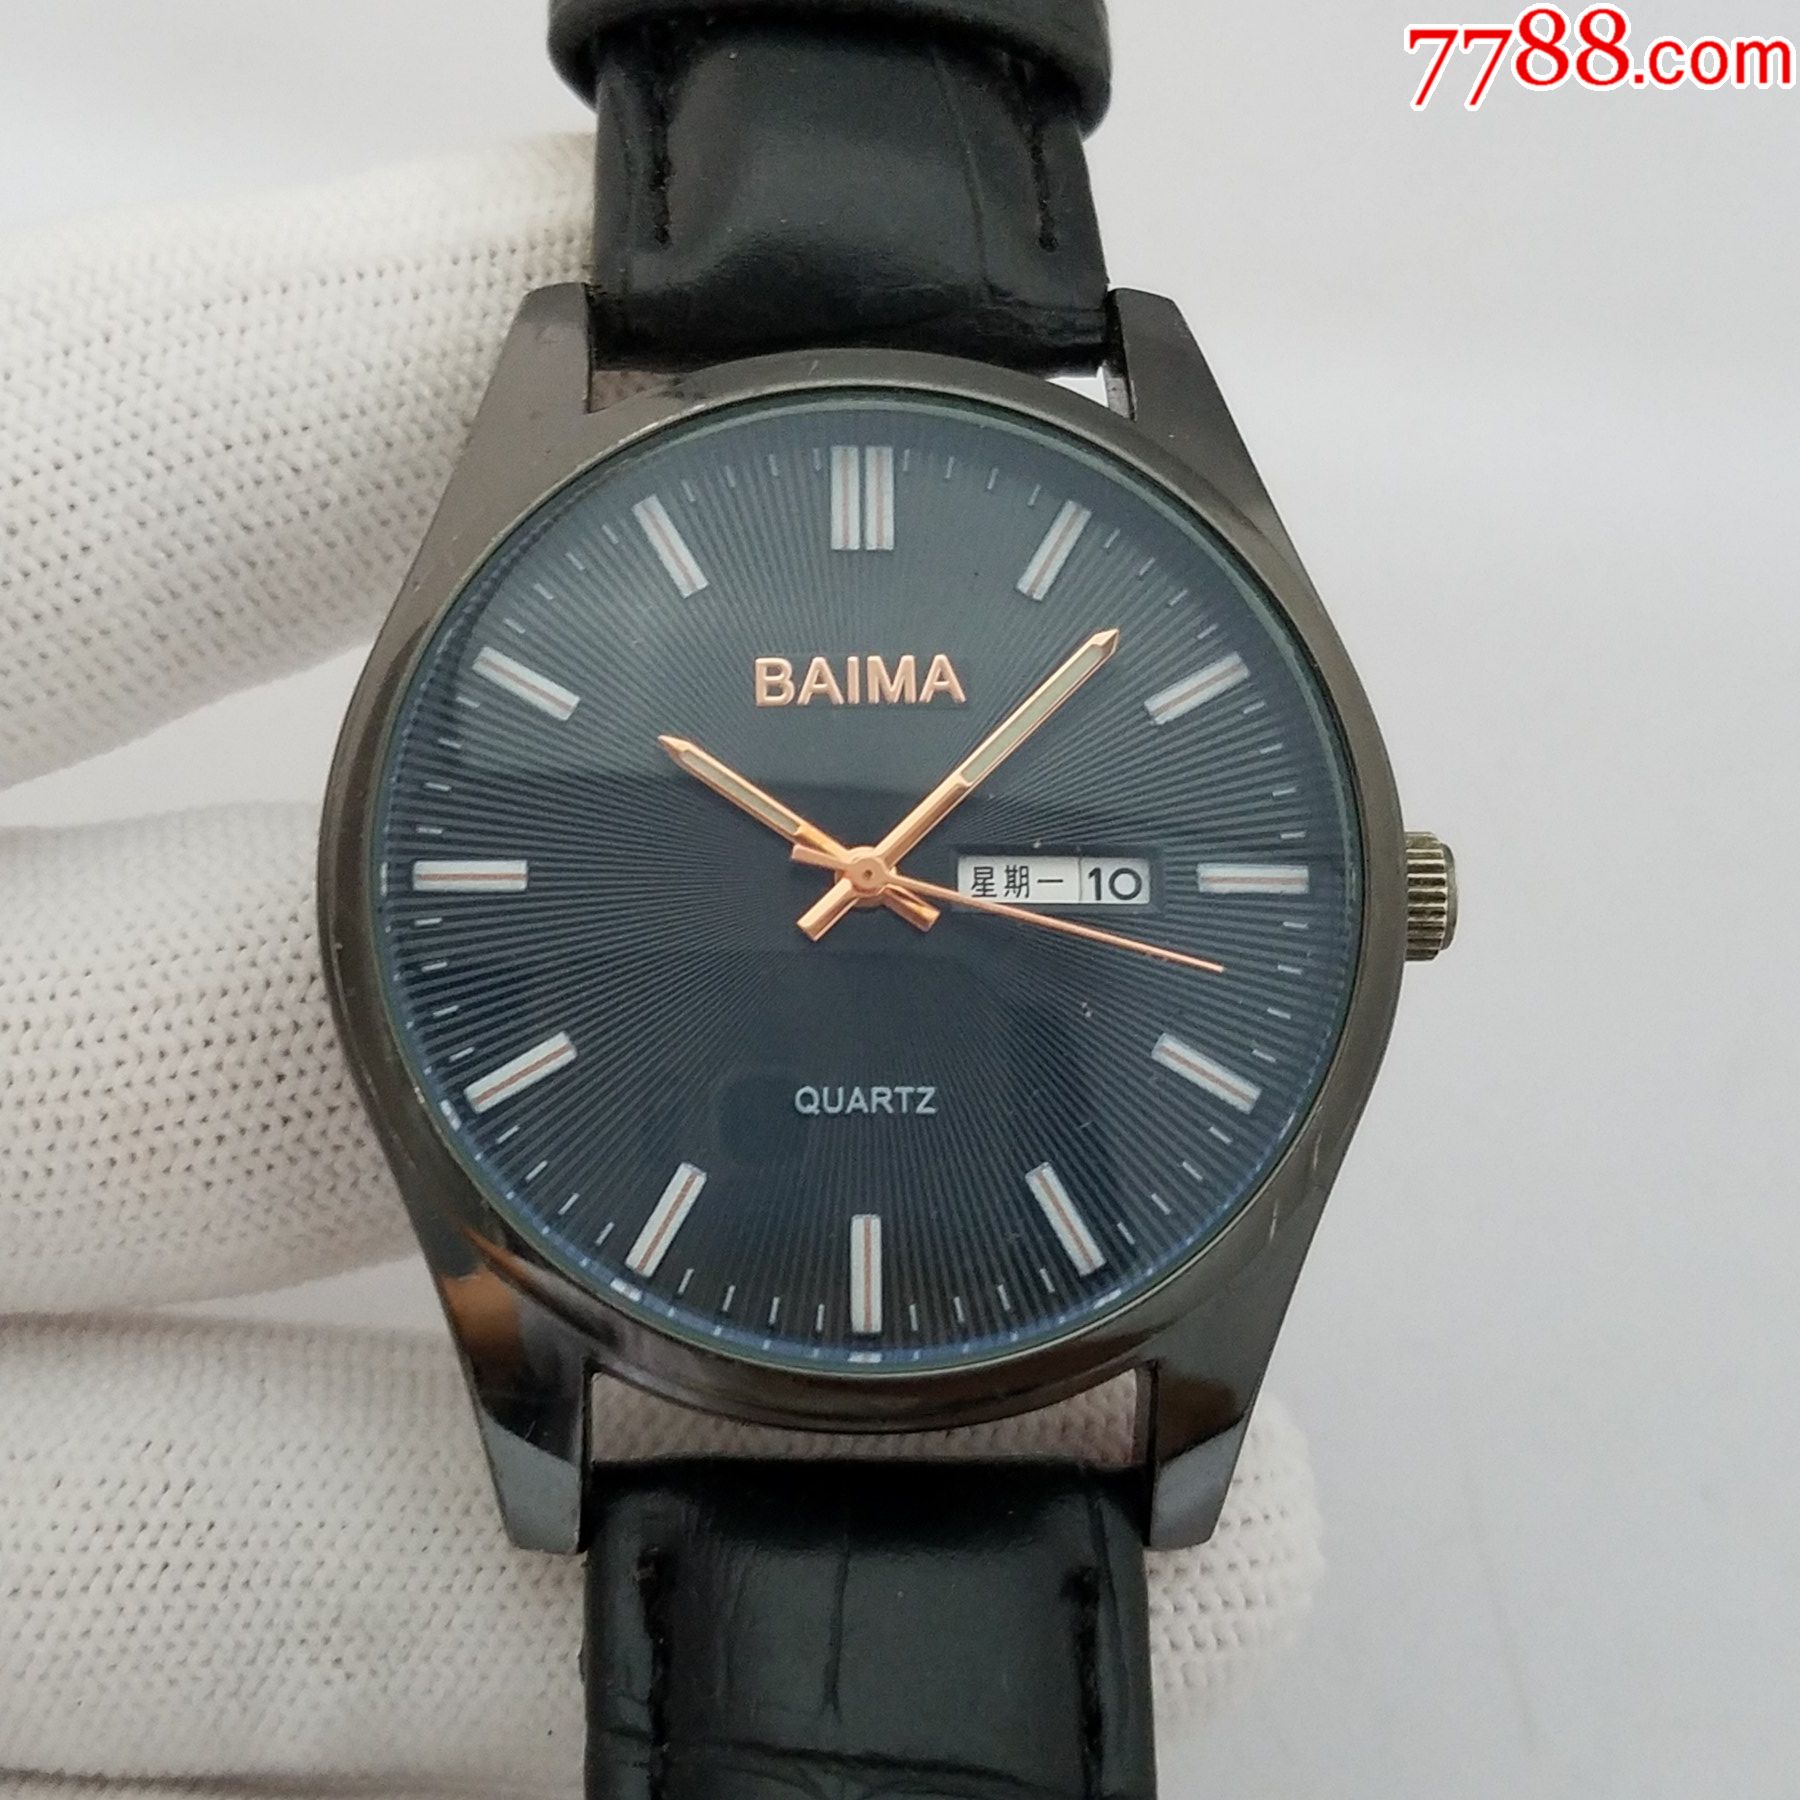 男士baima手表价格明细图片